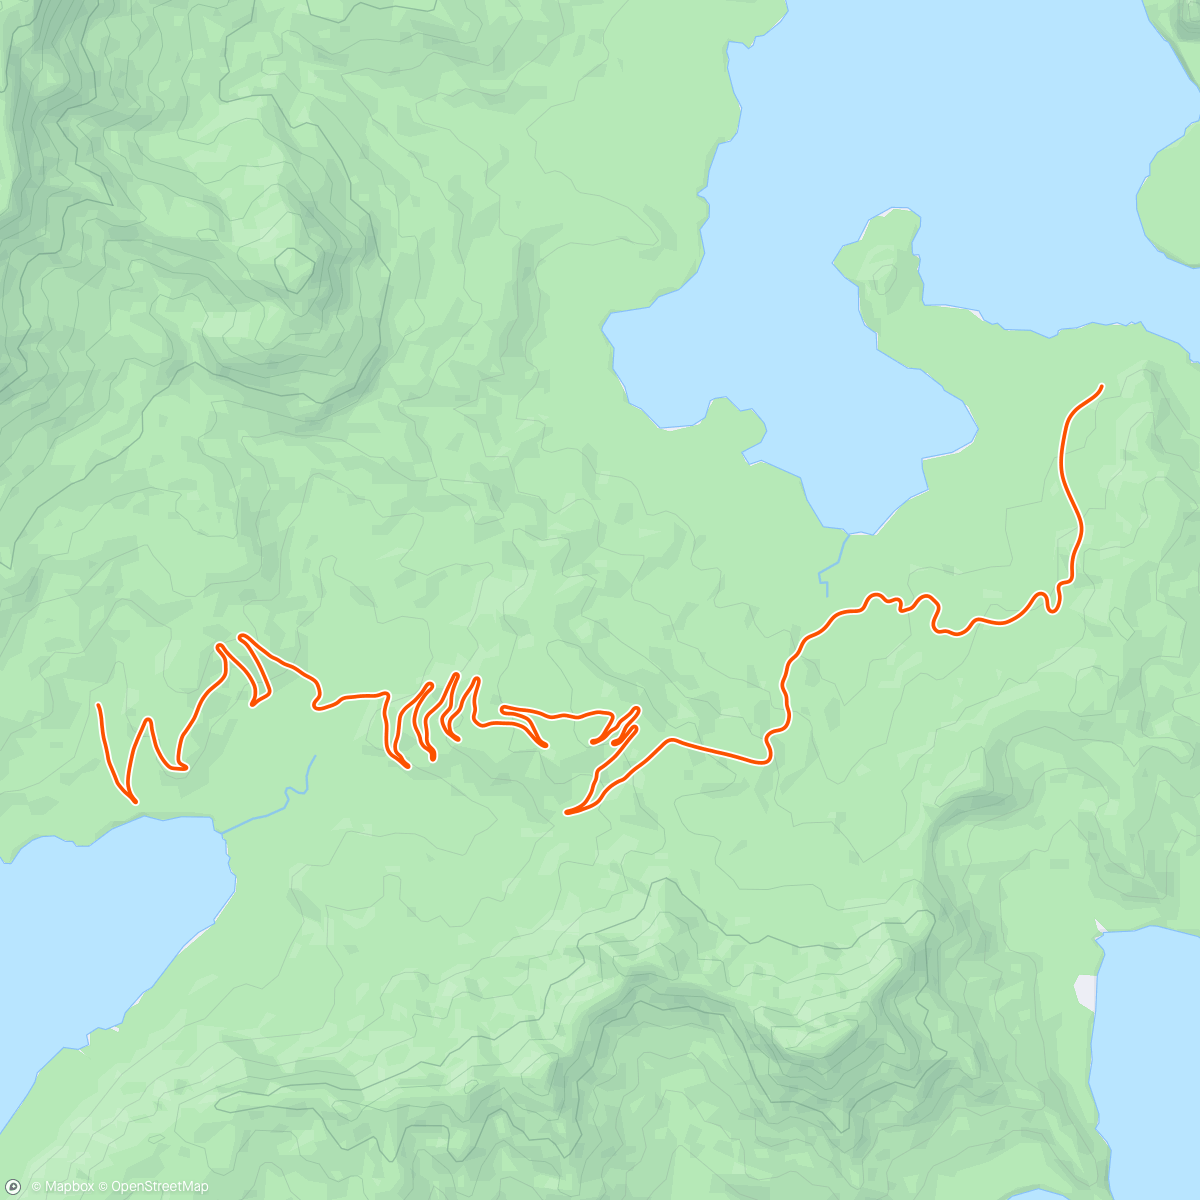 アクティビティ「Zwift - Road to Sky in Watopia」の地図